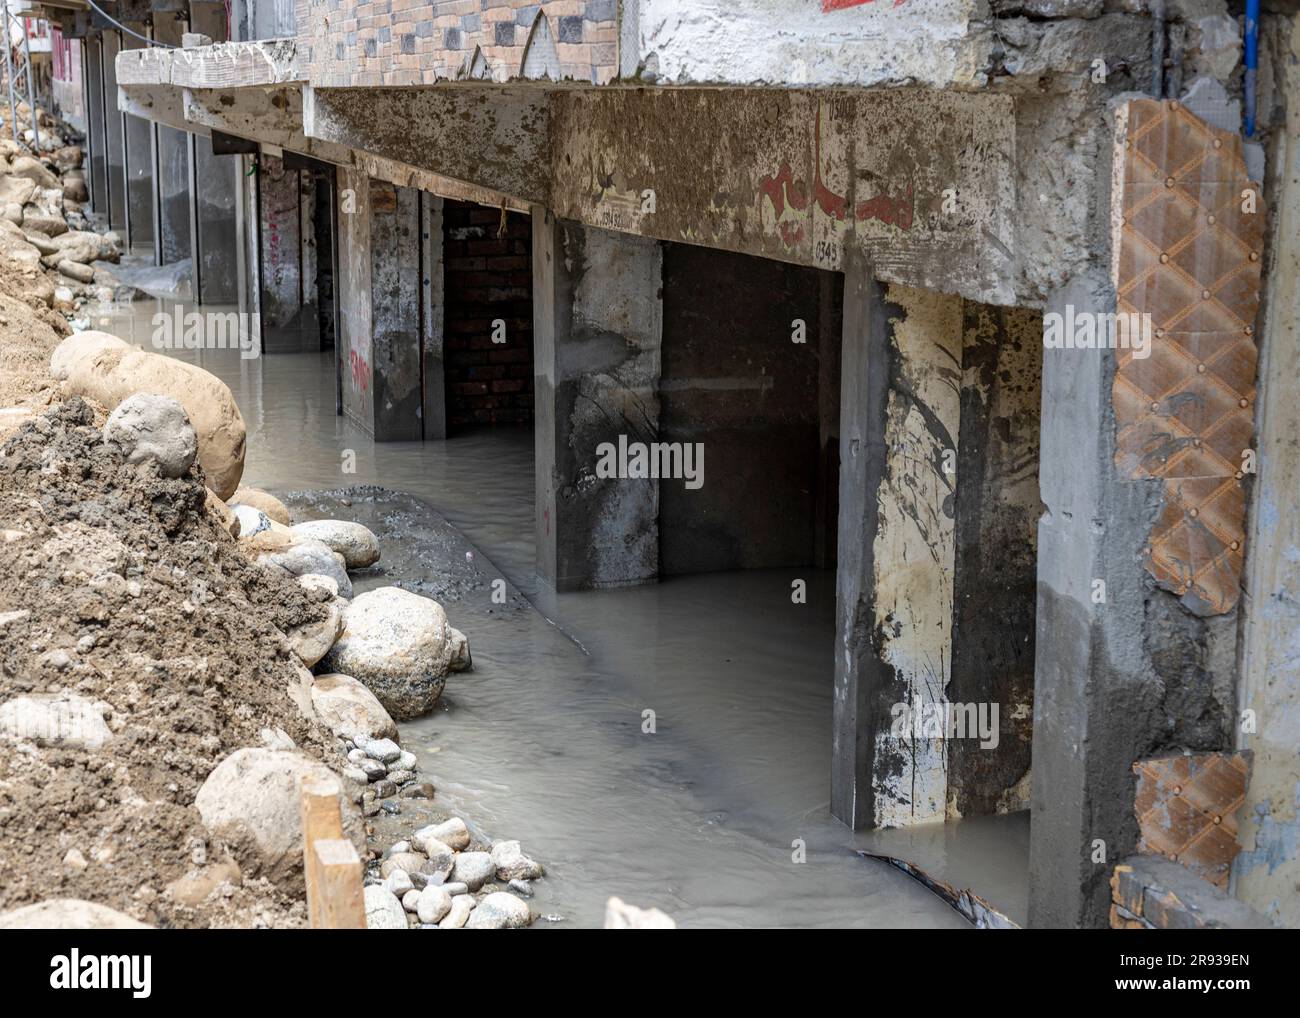 Bâtiment d'hôtel endommagé et maisons causées par les inondations dans le bazar de bahreïn, dans la vallée de swat, au Pakistan. Banque D'Images